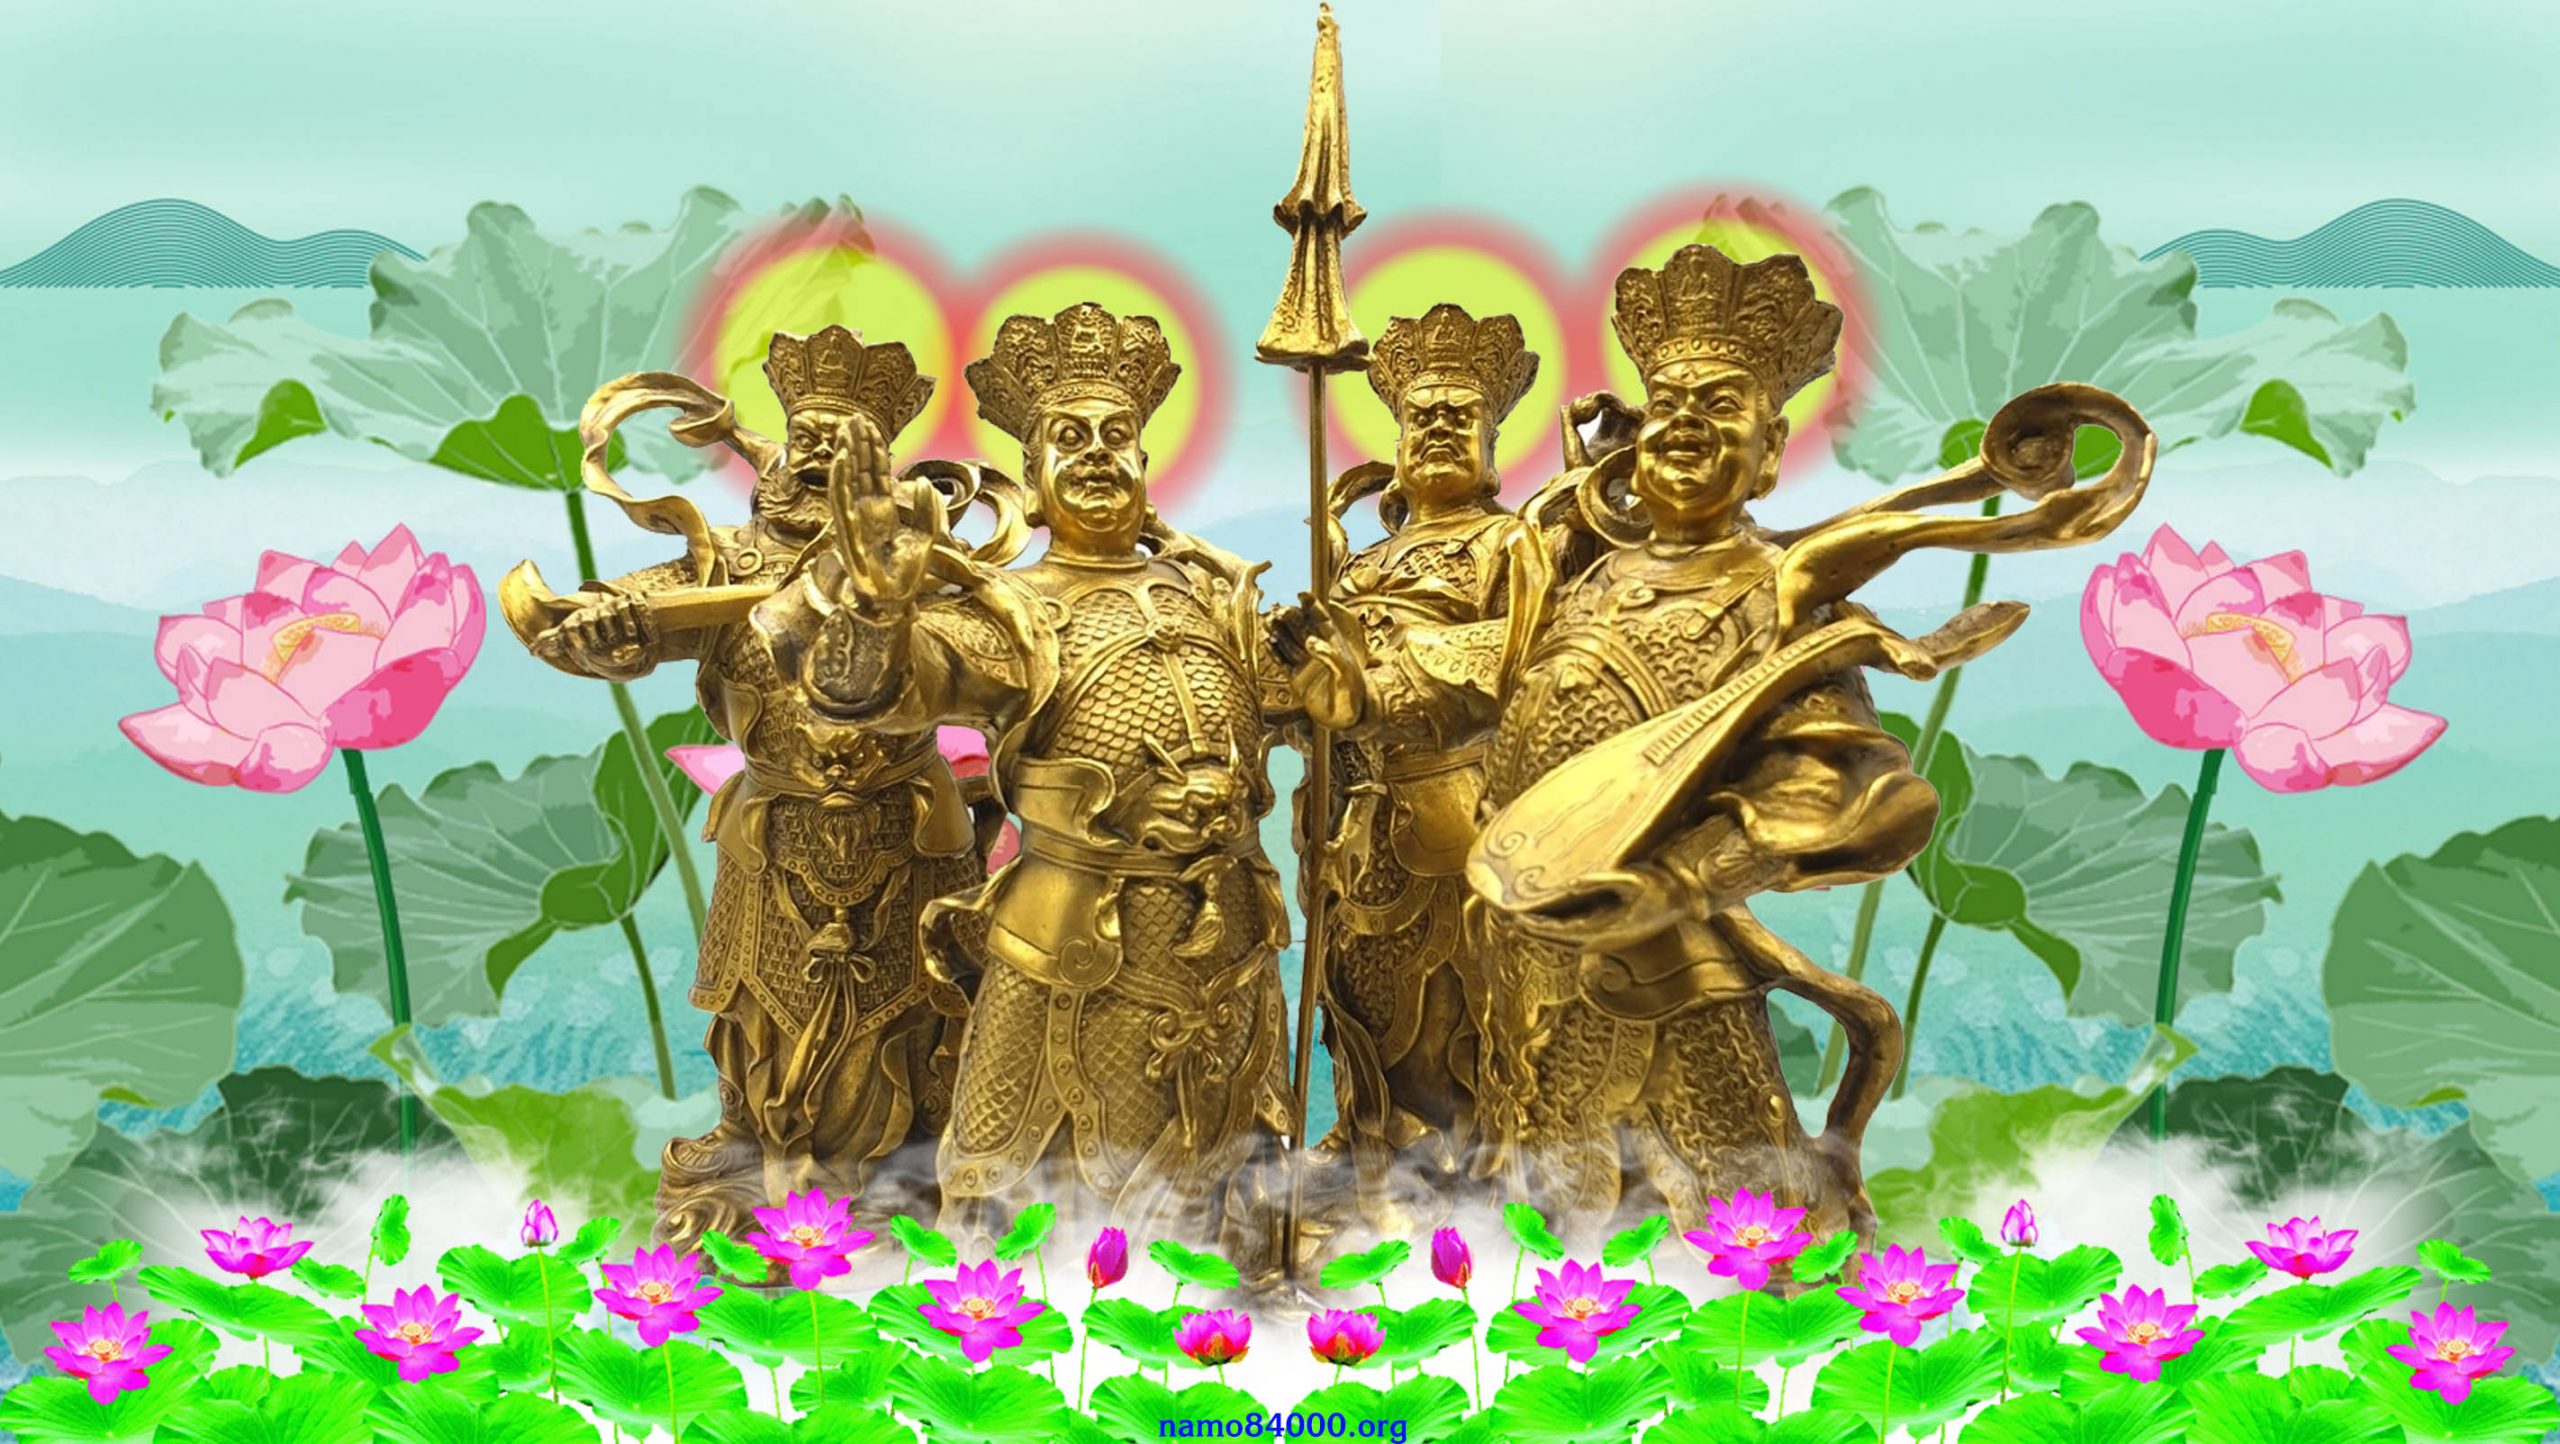 Hộ Pháp Chư Thiên Bồ tát – Namo Dharma Protectors Maha-Bodhisattvas – 護法諸天菩薩